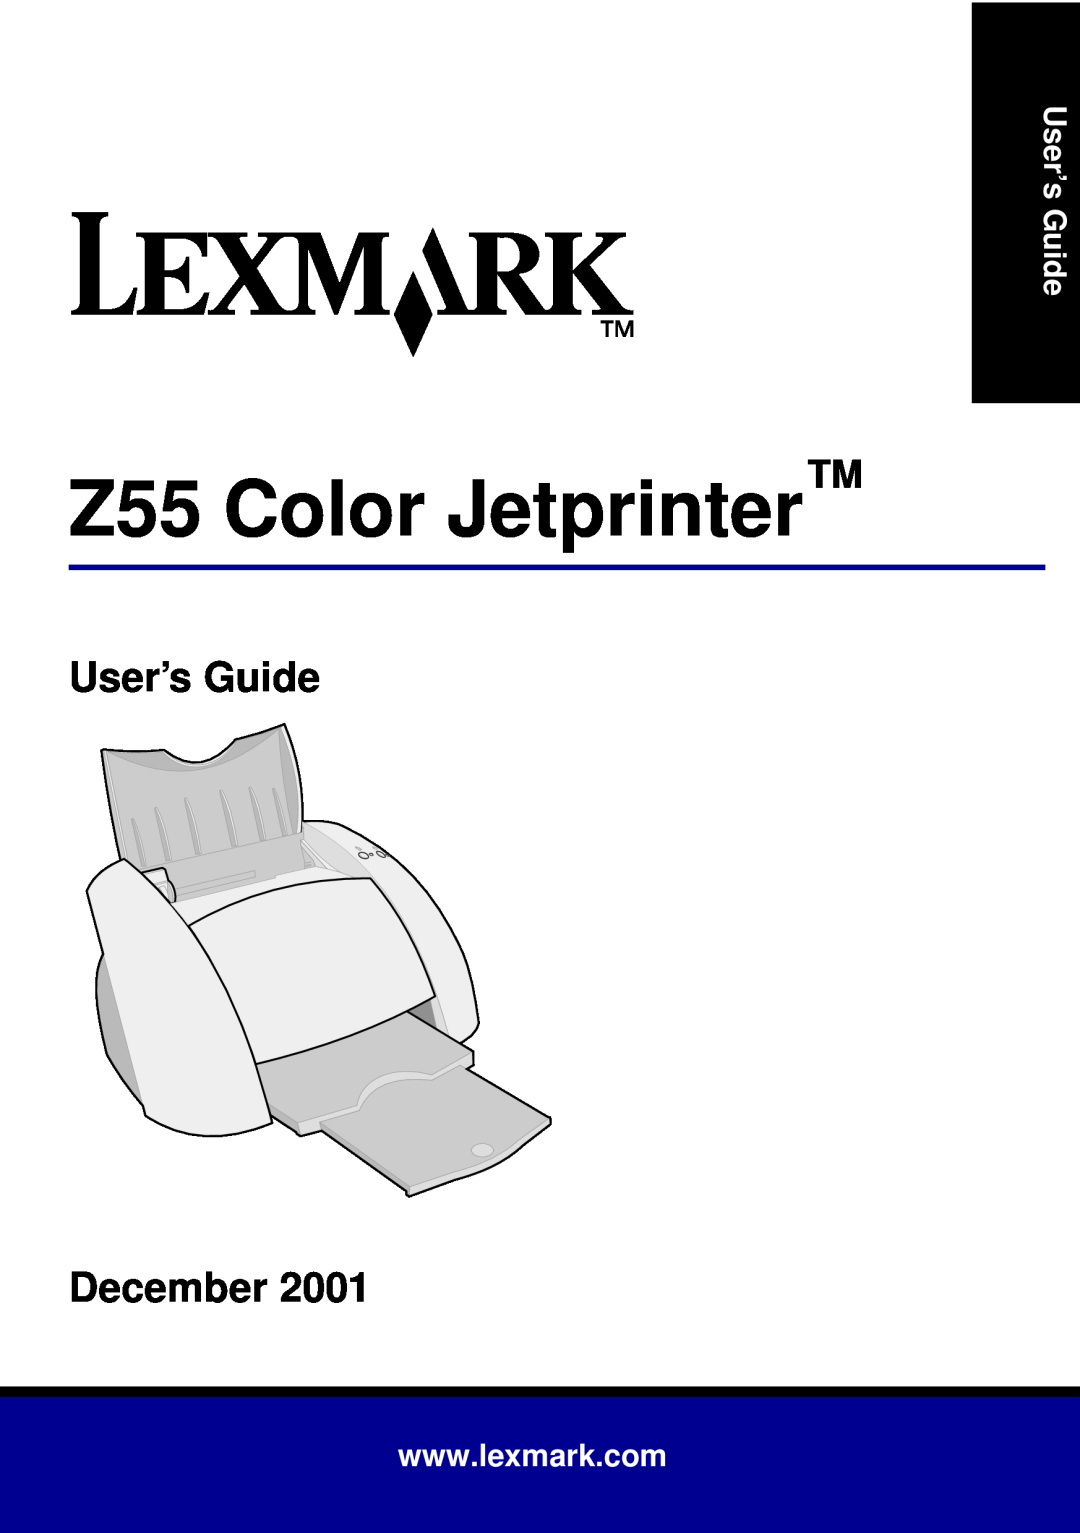 Lexmark manual Z55 Color Jetprinter, User’s Guide December 